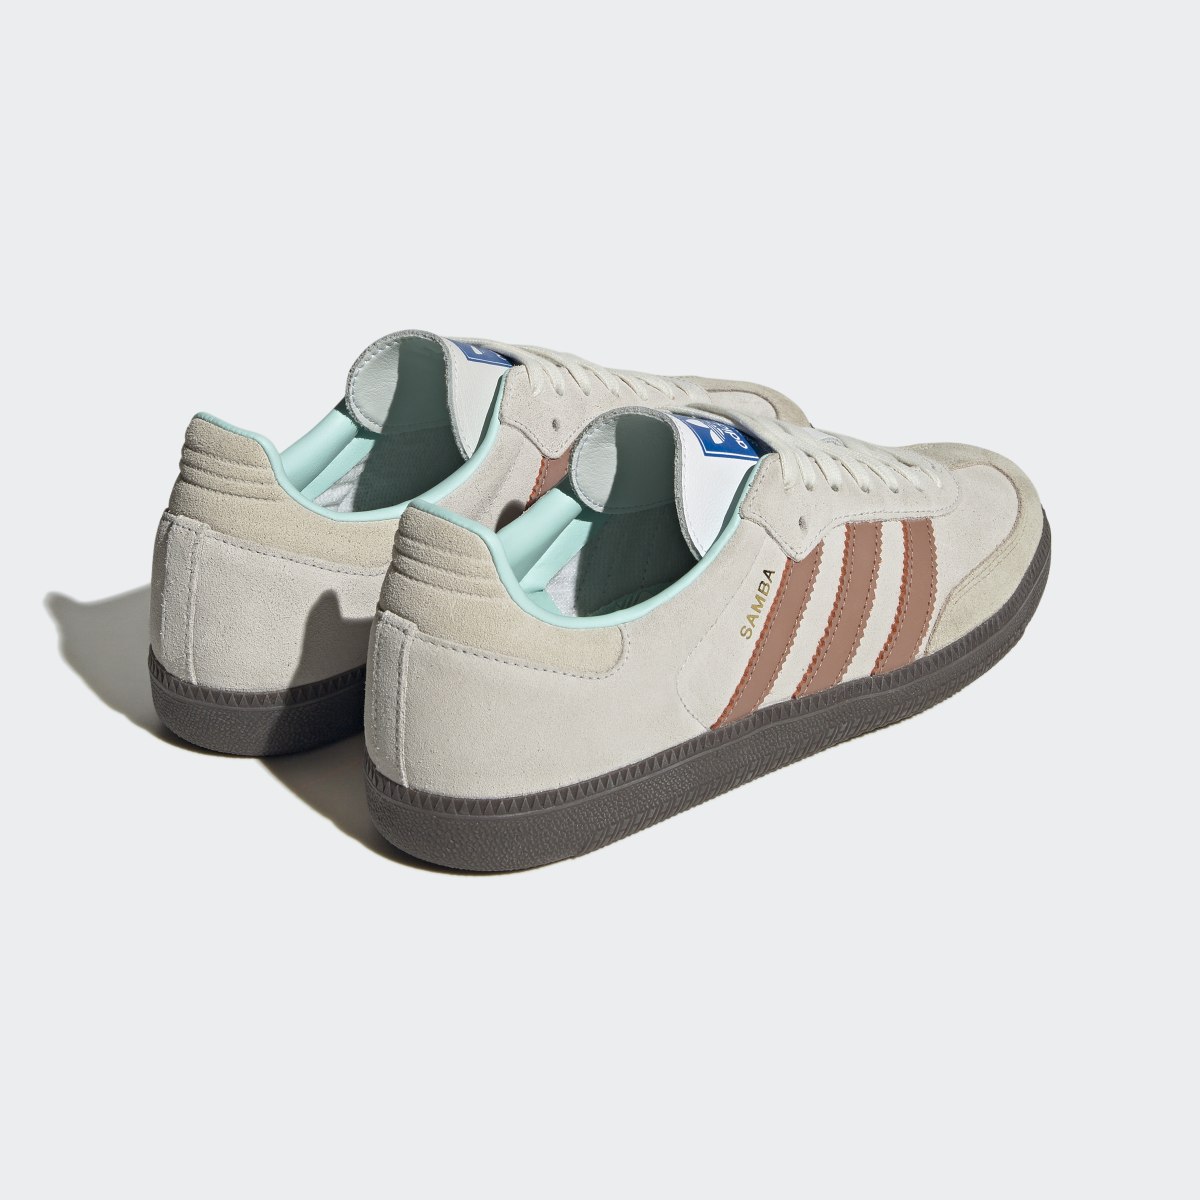 Adidas Samba Originals Shoes. 11